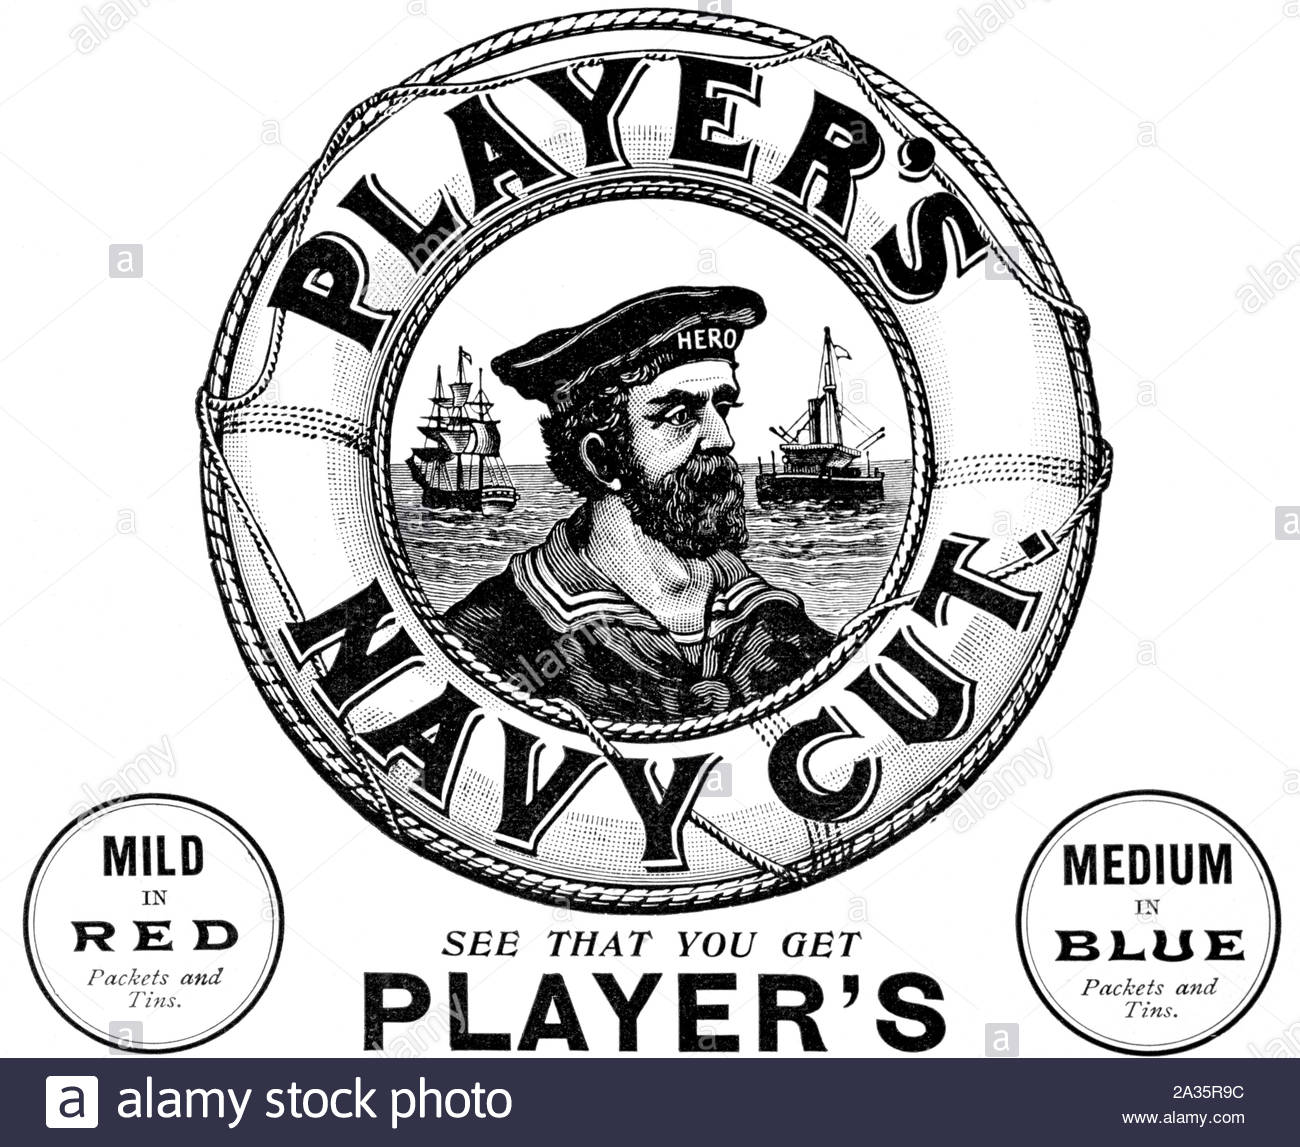 L'ère victorienne, Player's Navy Cut Tobacco, vintage advertising à partir de 1899 Banque D'Images